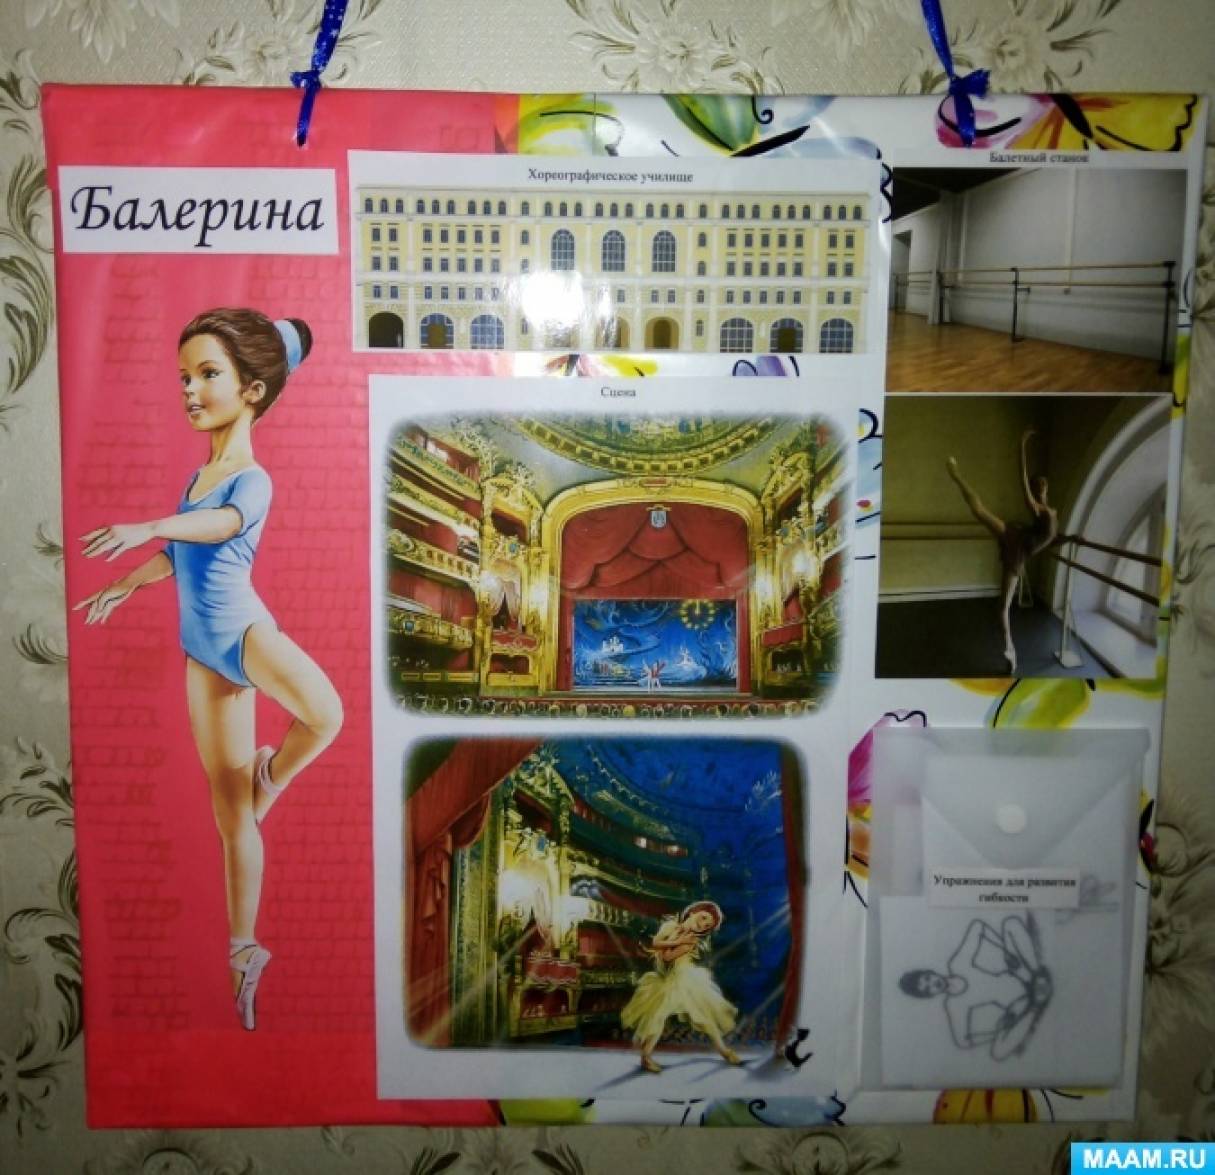 Плакат «Балерина» для знакомства дошкольников с балетом